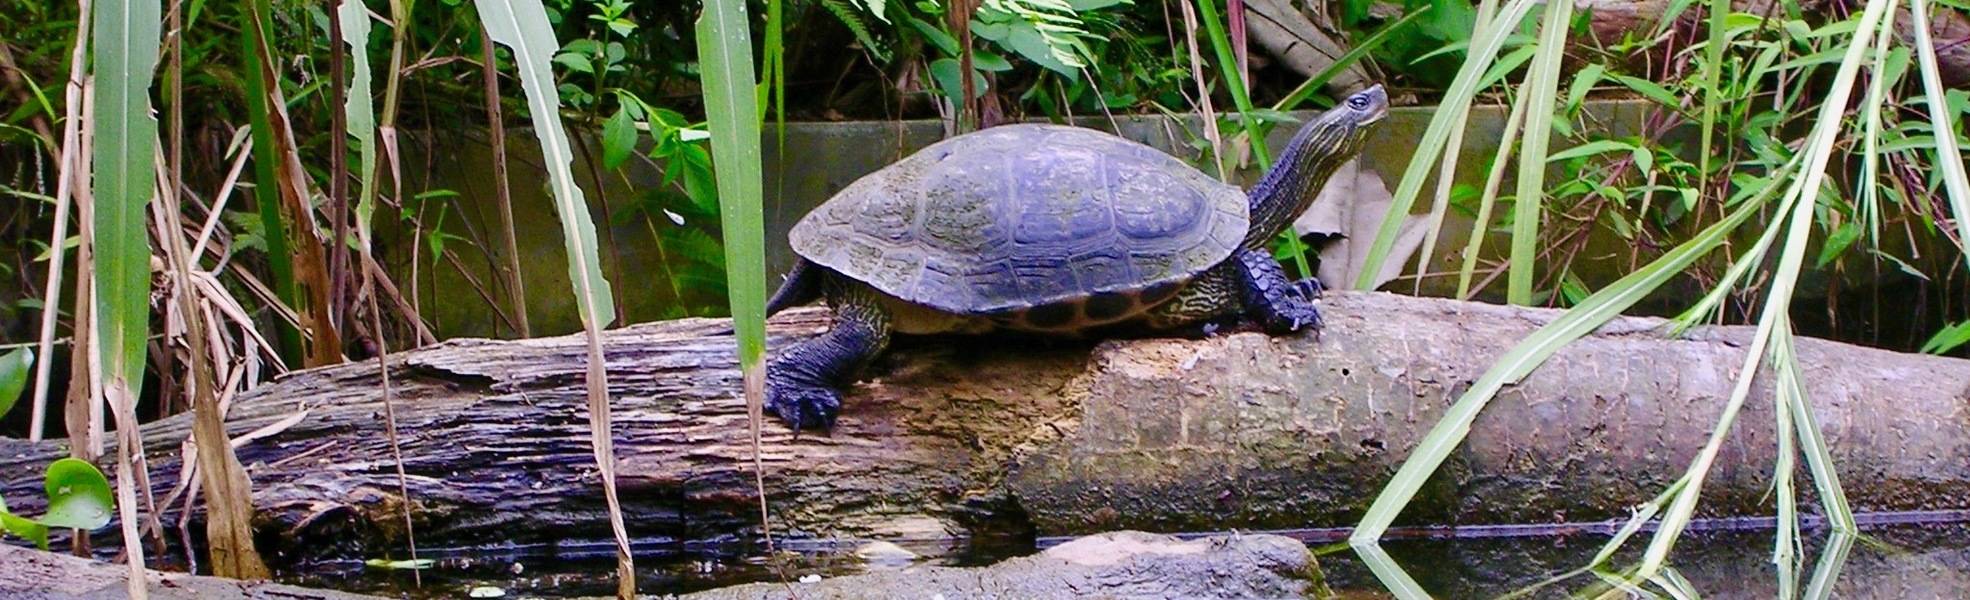 Freiwilligenarbeit mit Schildkröten in Vietnam